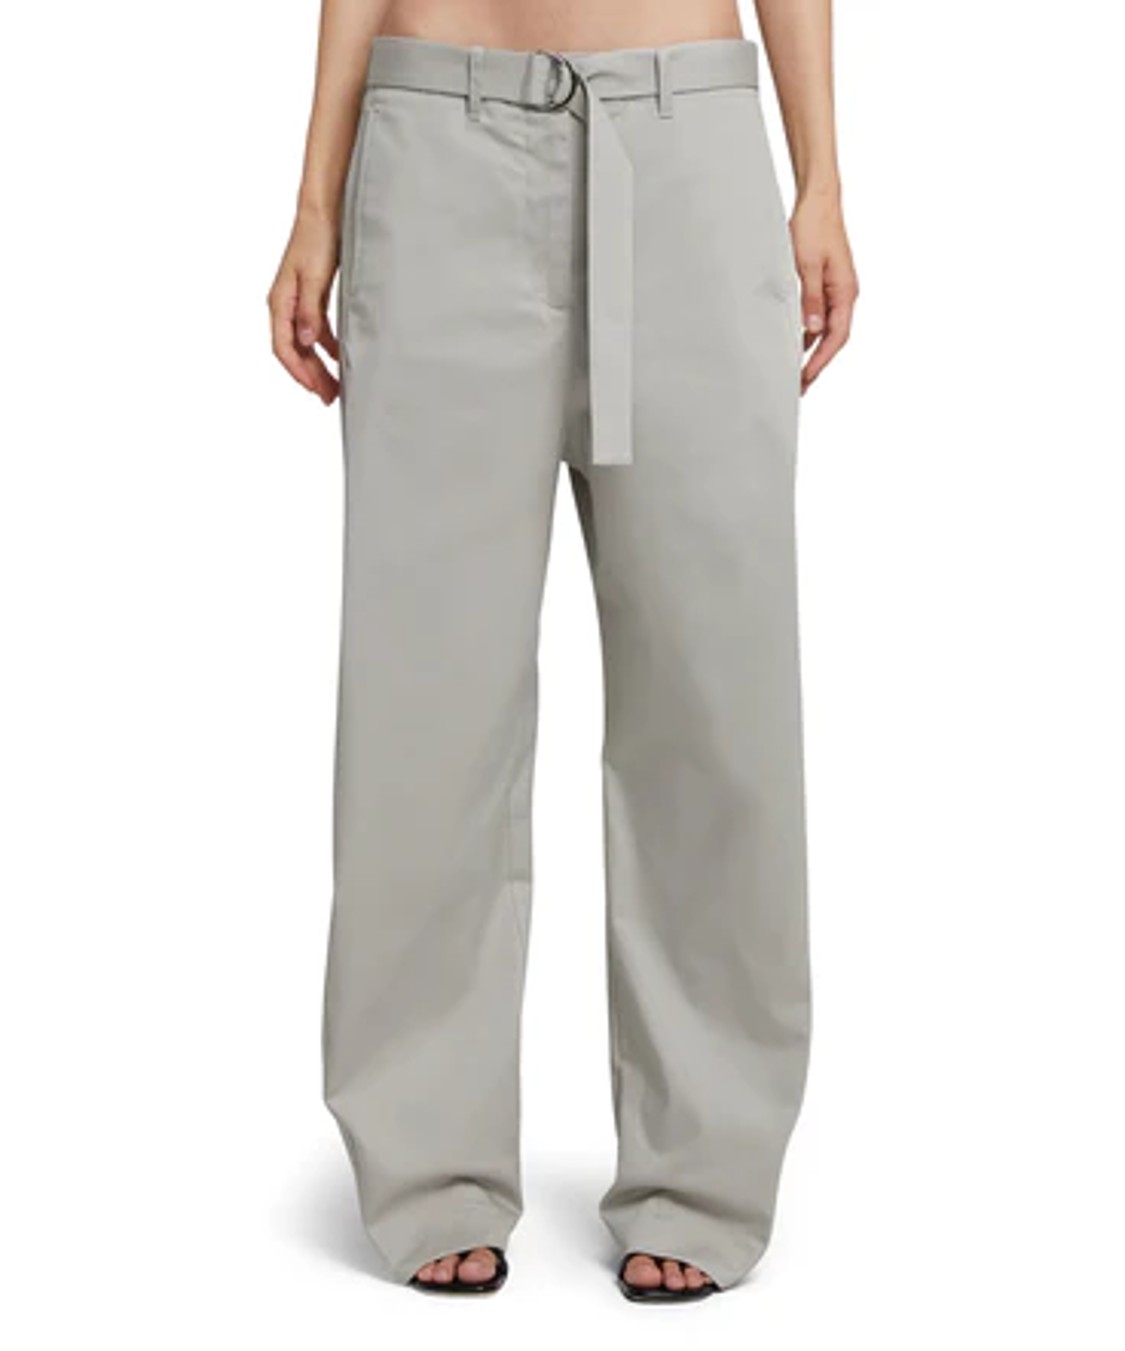 shop MSGM  Pantaloni: Pantaloni MSGM, modello dritto, vita alta, cintura in vita, tasche laterali e posteriori, in gabardina di cotone stretch.

Composizione: 98% cotone, 2% elastan. number 2687